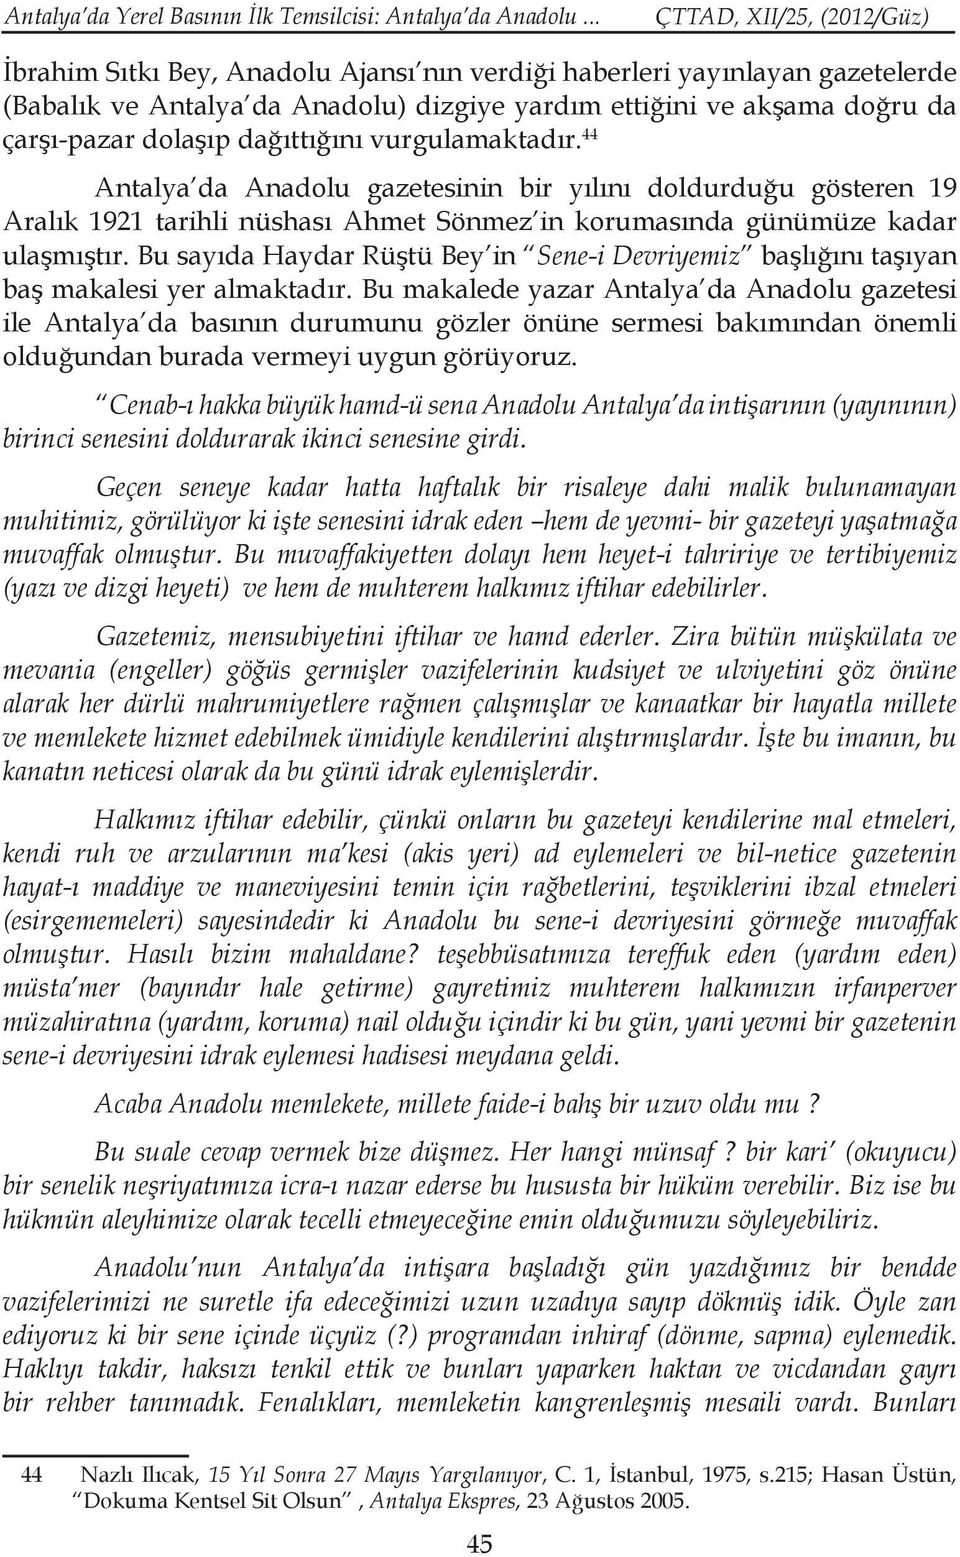 vurgulamaktadır. 44 Antalya da Anadolu gazetesinin bir yılını doldurduğu gösteren 19 Aralık 1921 tarihli nüshası Ahmet Sönmez in korumasında günümüze kadar ulaşmıştır.